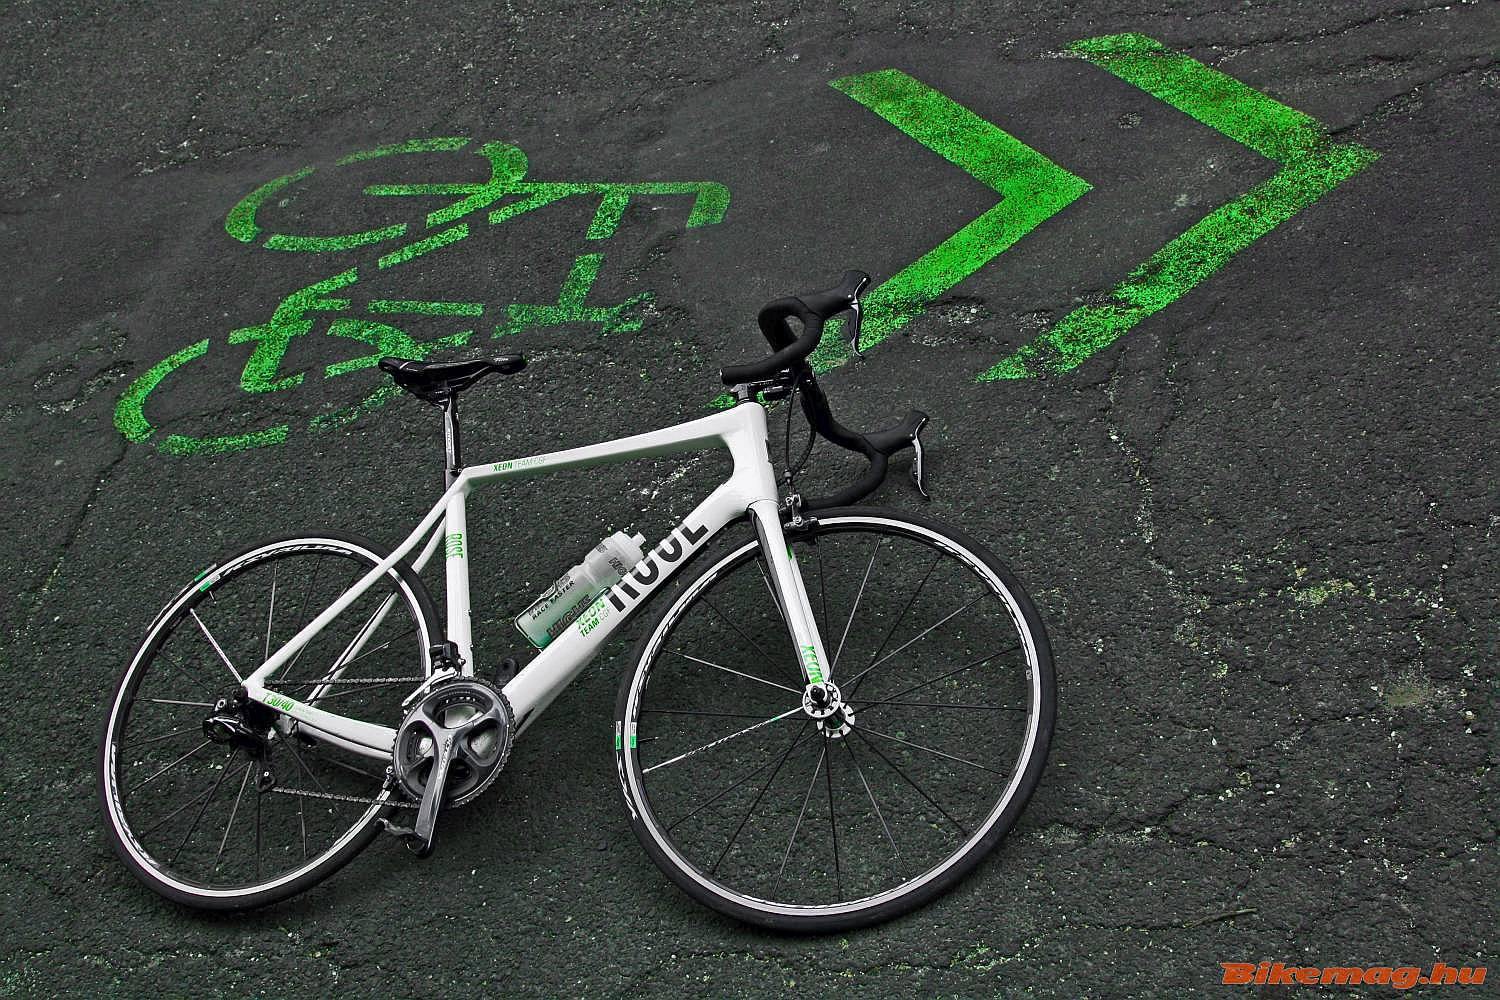 Idén már mi is próbálkoztunk kerékpársáv zöldre festésével :-)